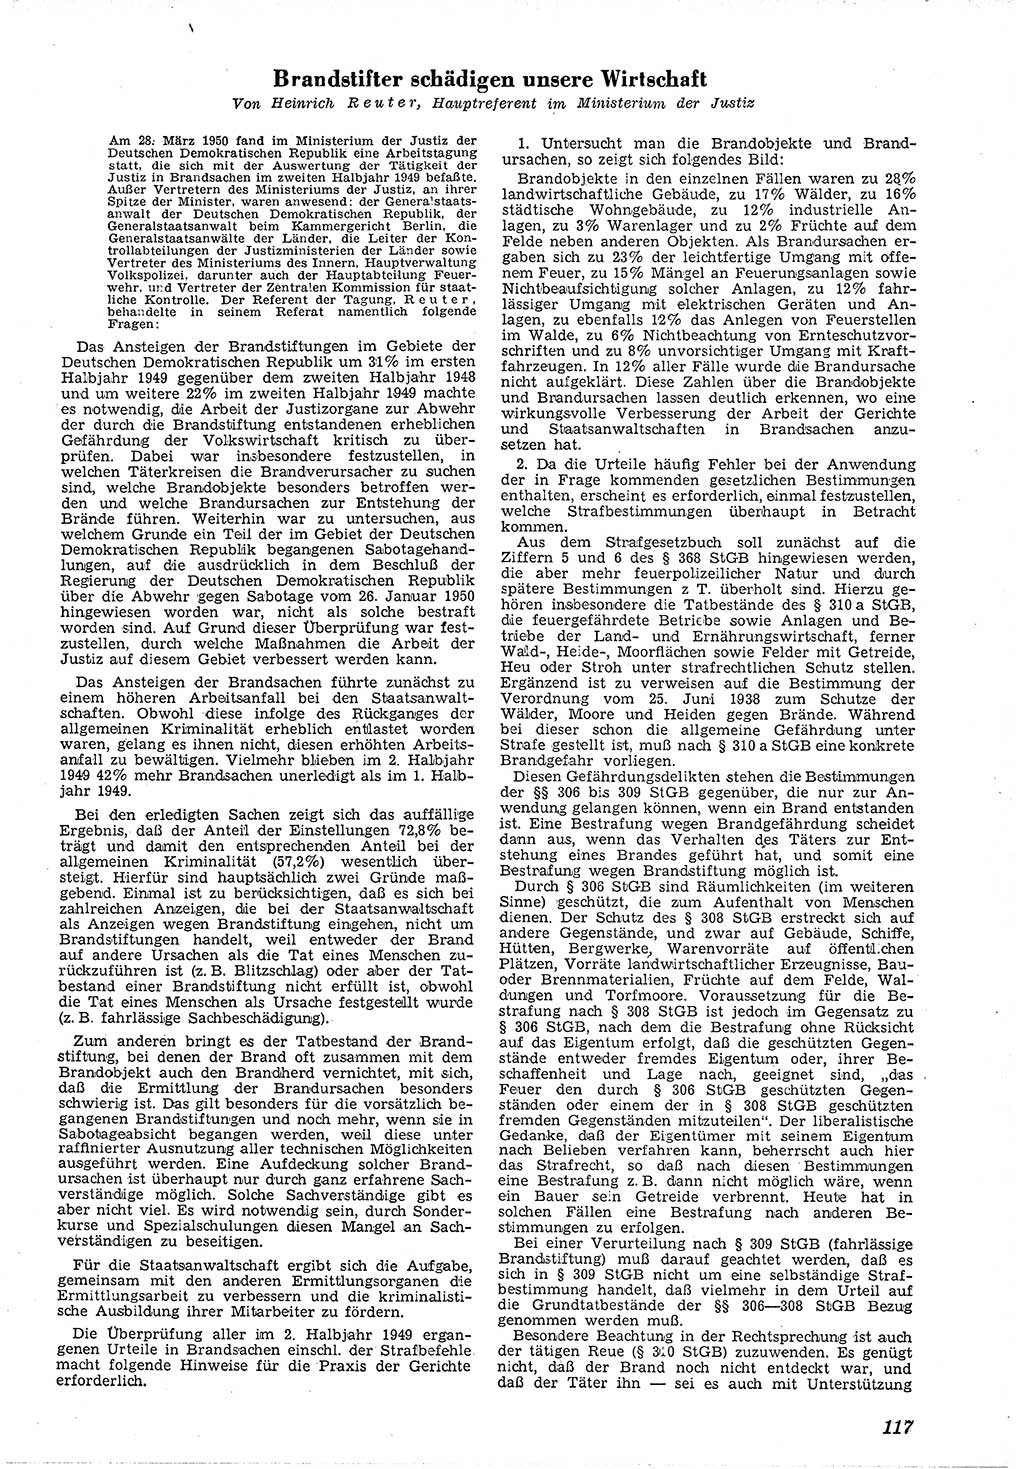 Neue Justiz (NJ), Zeitschrift für Recht und Rechtswissenschaft [Deutsche Demokratische Republik (DDR)], 4. Jahrgang 1950, Seite 117 (NJ DDR 1950, S. 117)